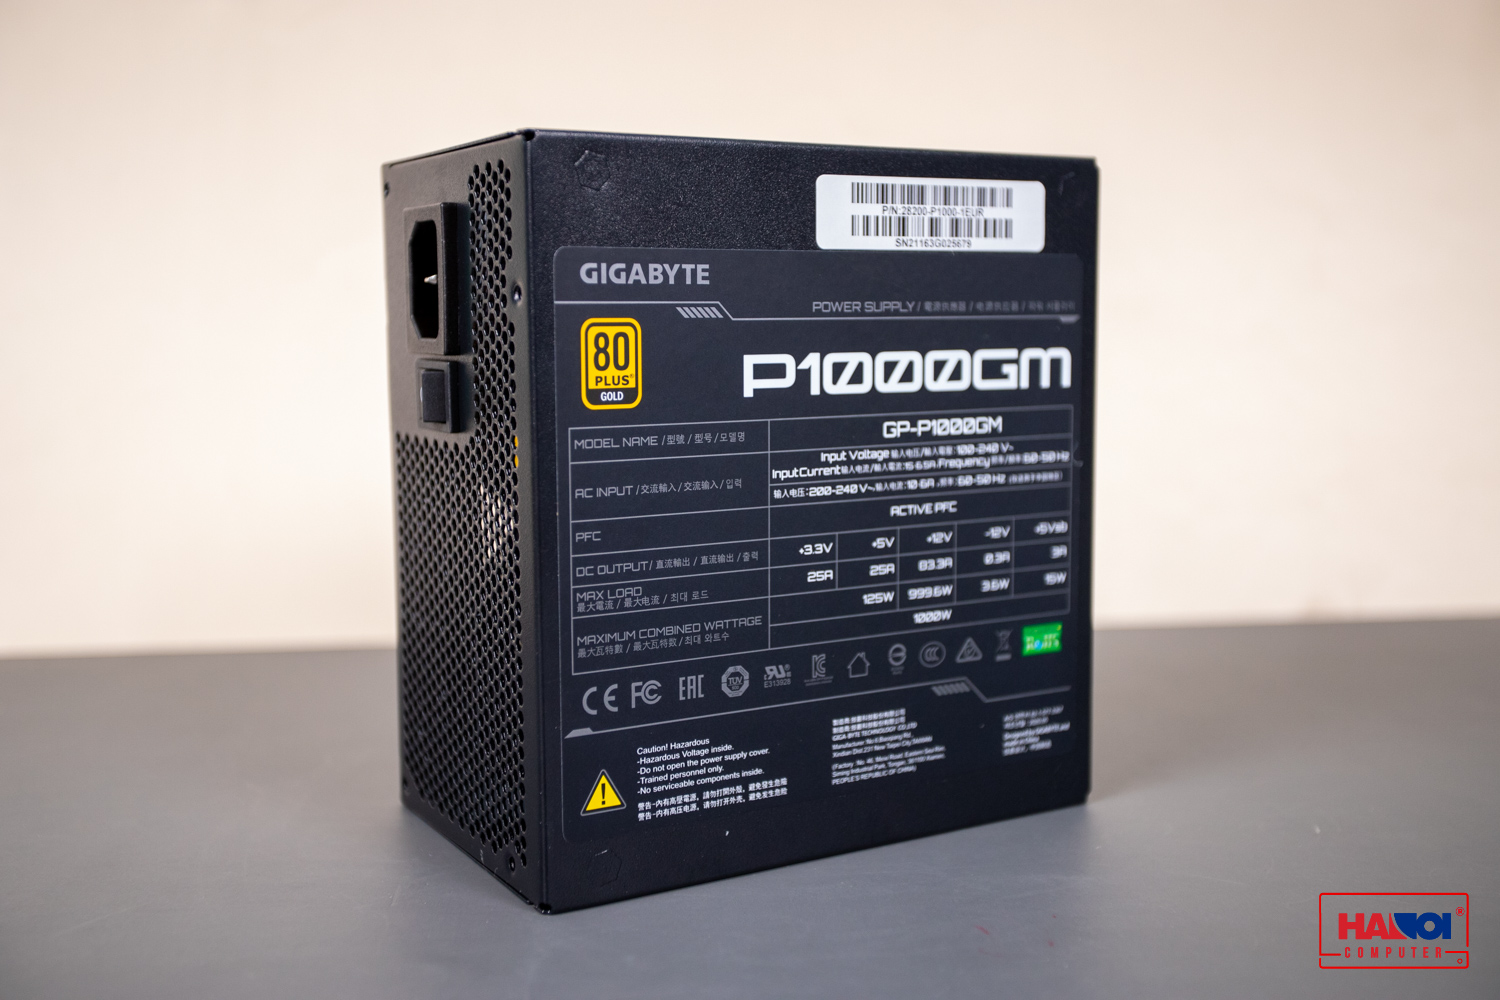 Nguồn Gigabyte GP- P1000GM 1000W (80 Plus Gold/Full Modular/Màu Đen) giới thiệu 4